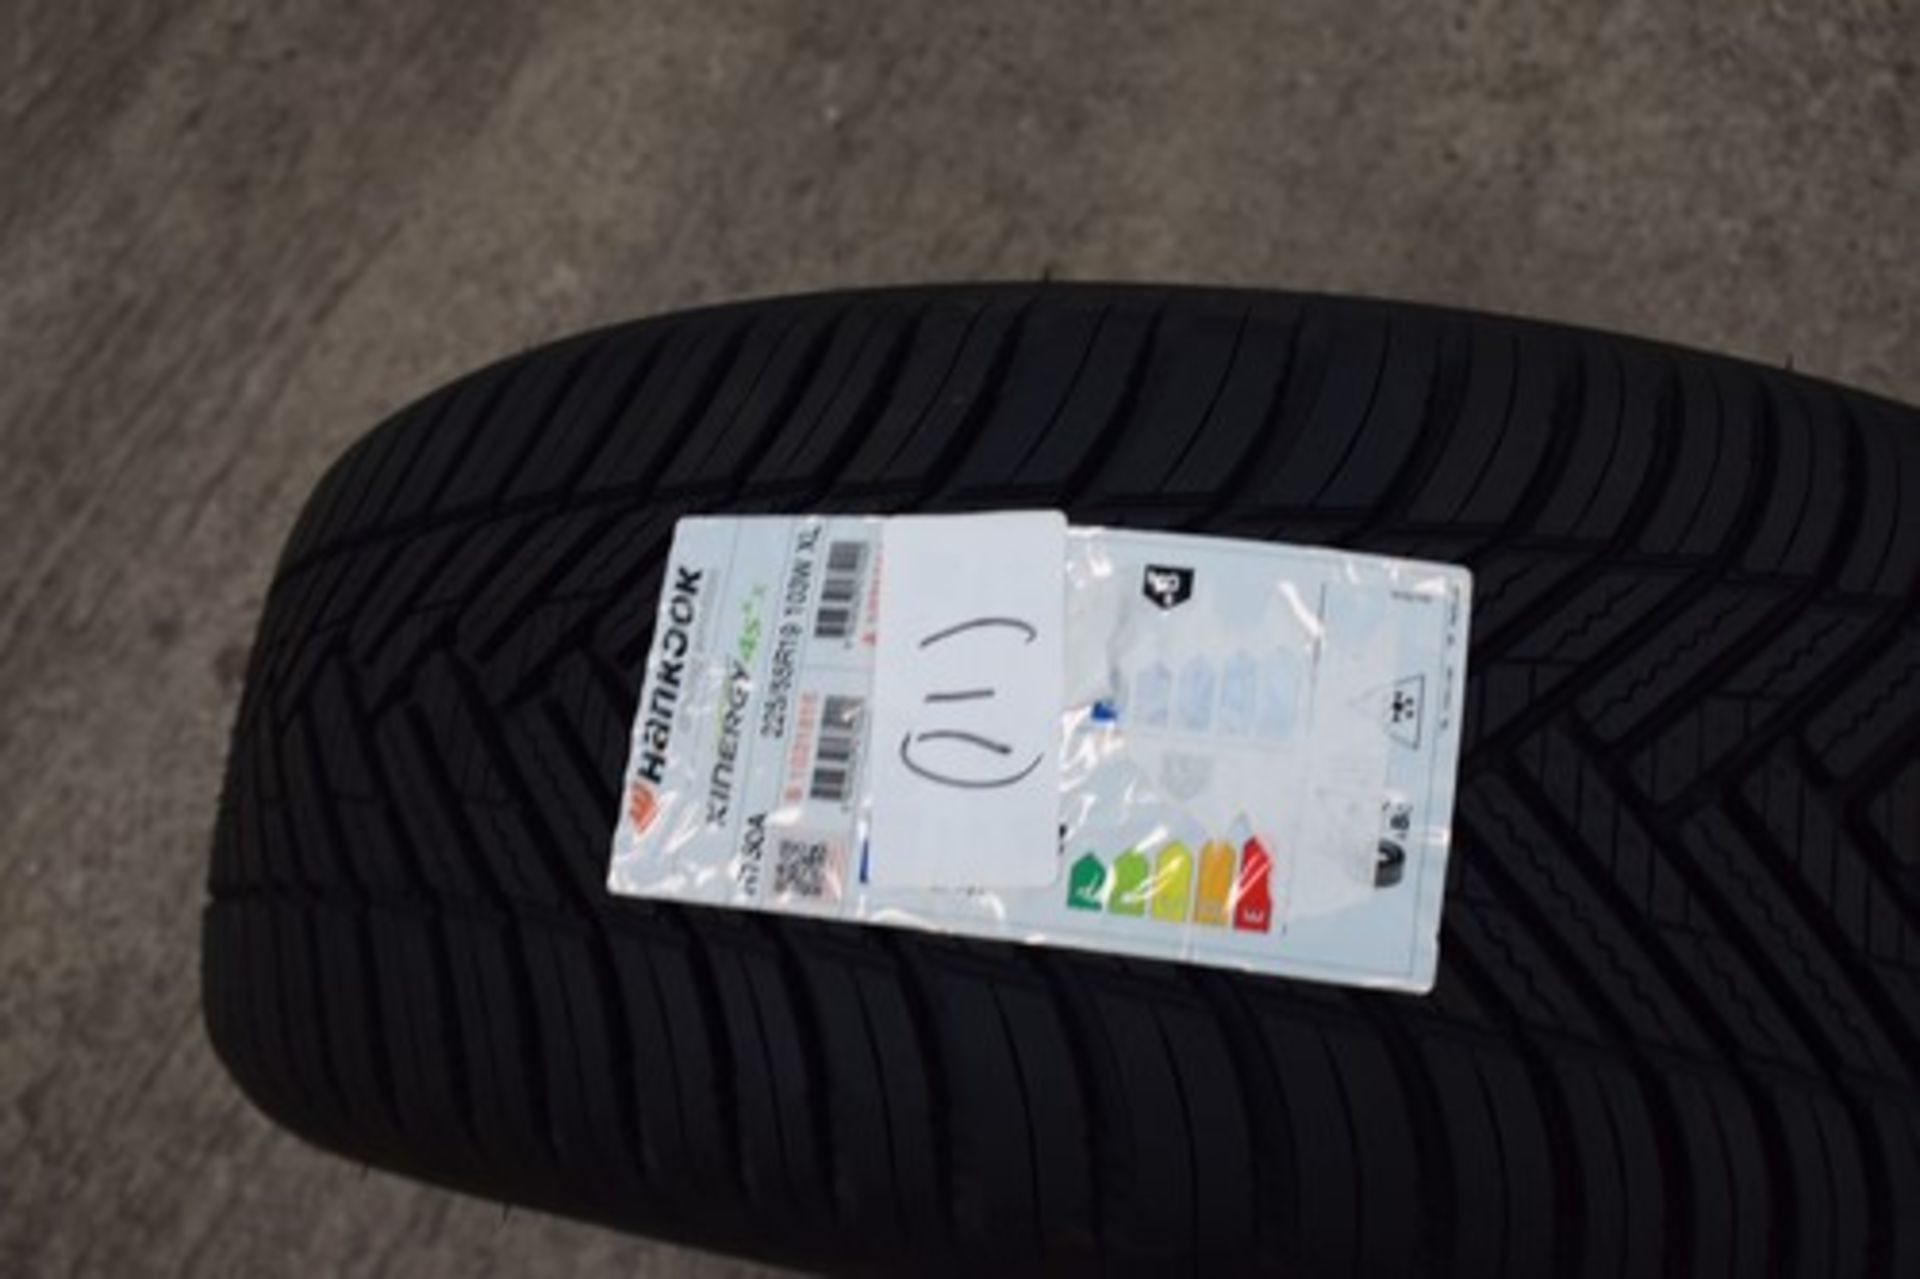 1 x Hankook Kinergy 4S2 X H750A tyre, size 225/55R19 103W XL - new with label (C1)(11)